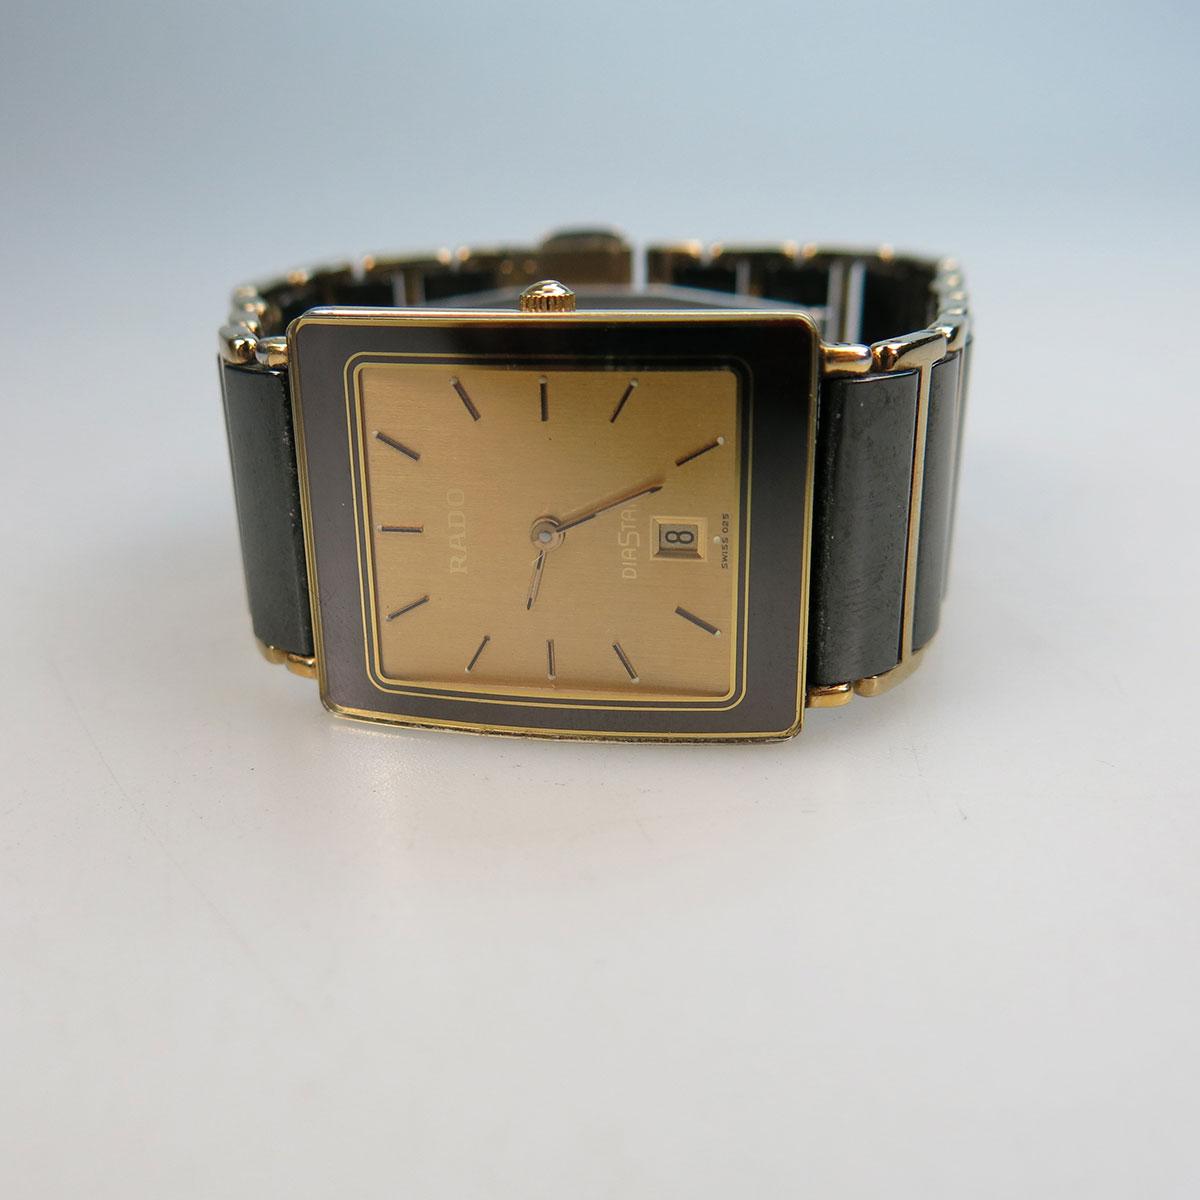 Rado “Jubilee Diastar” Wristwatch, With Date